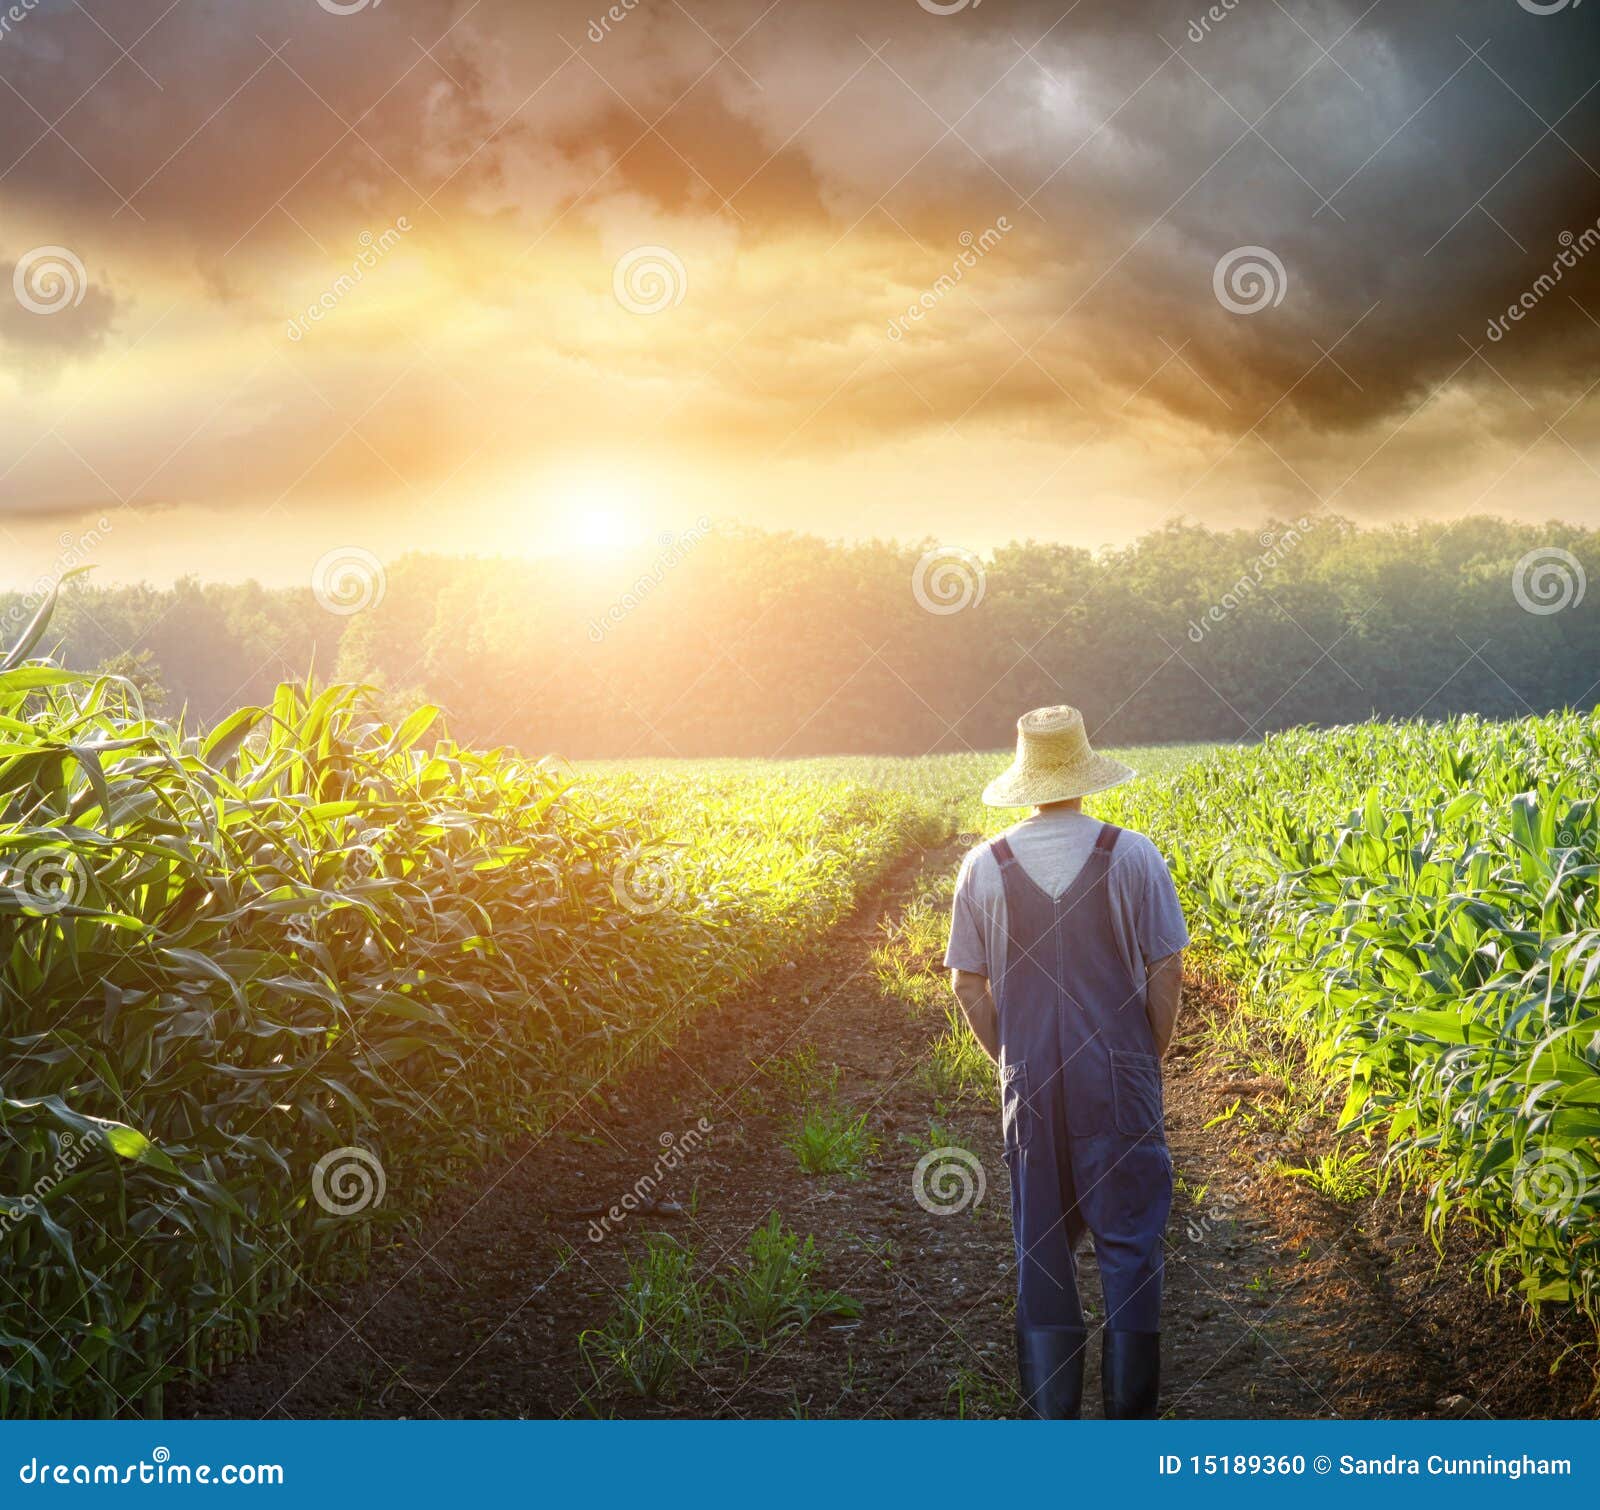 farmer walking in corn fields at sunset